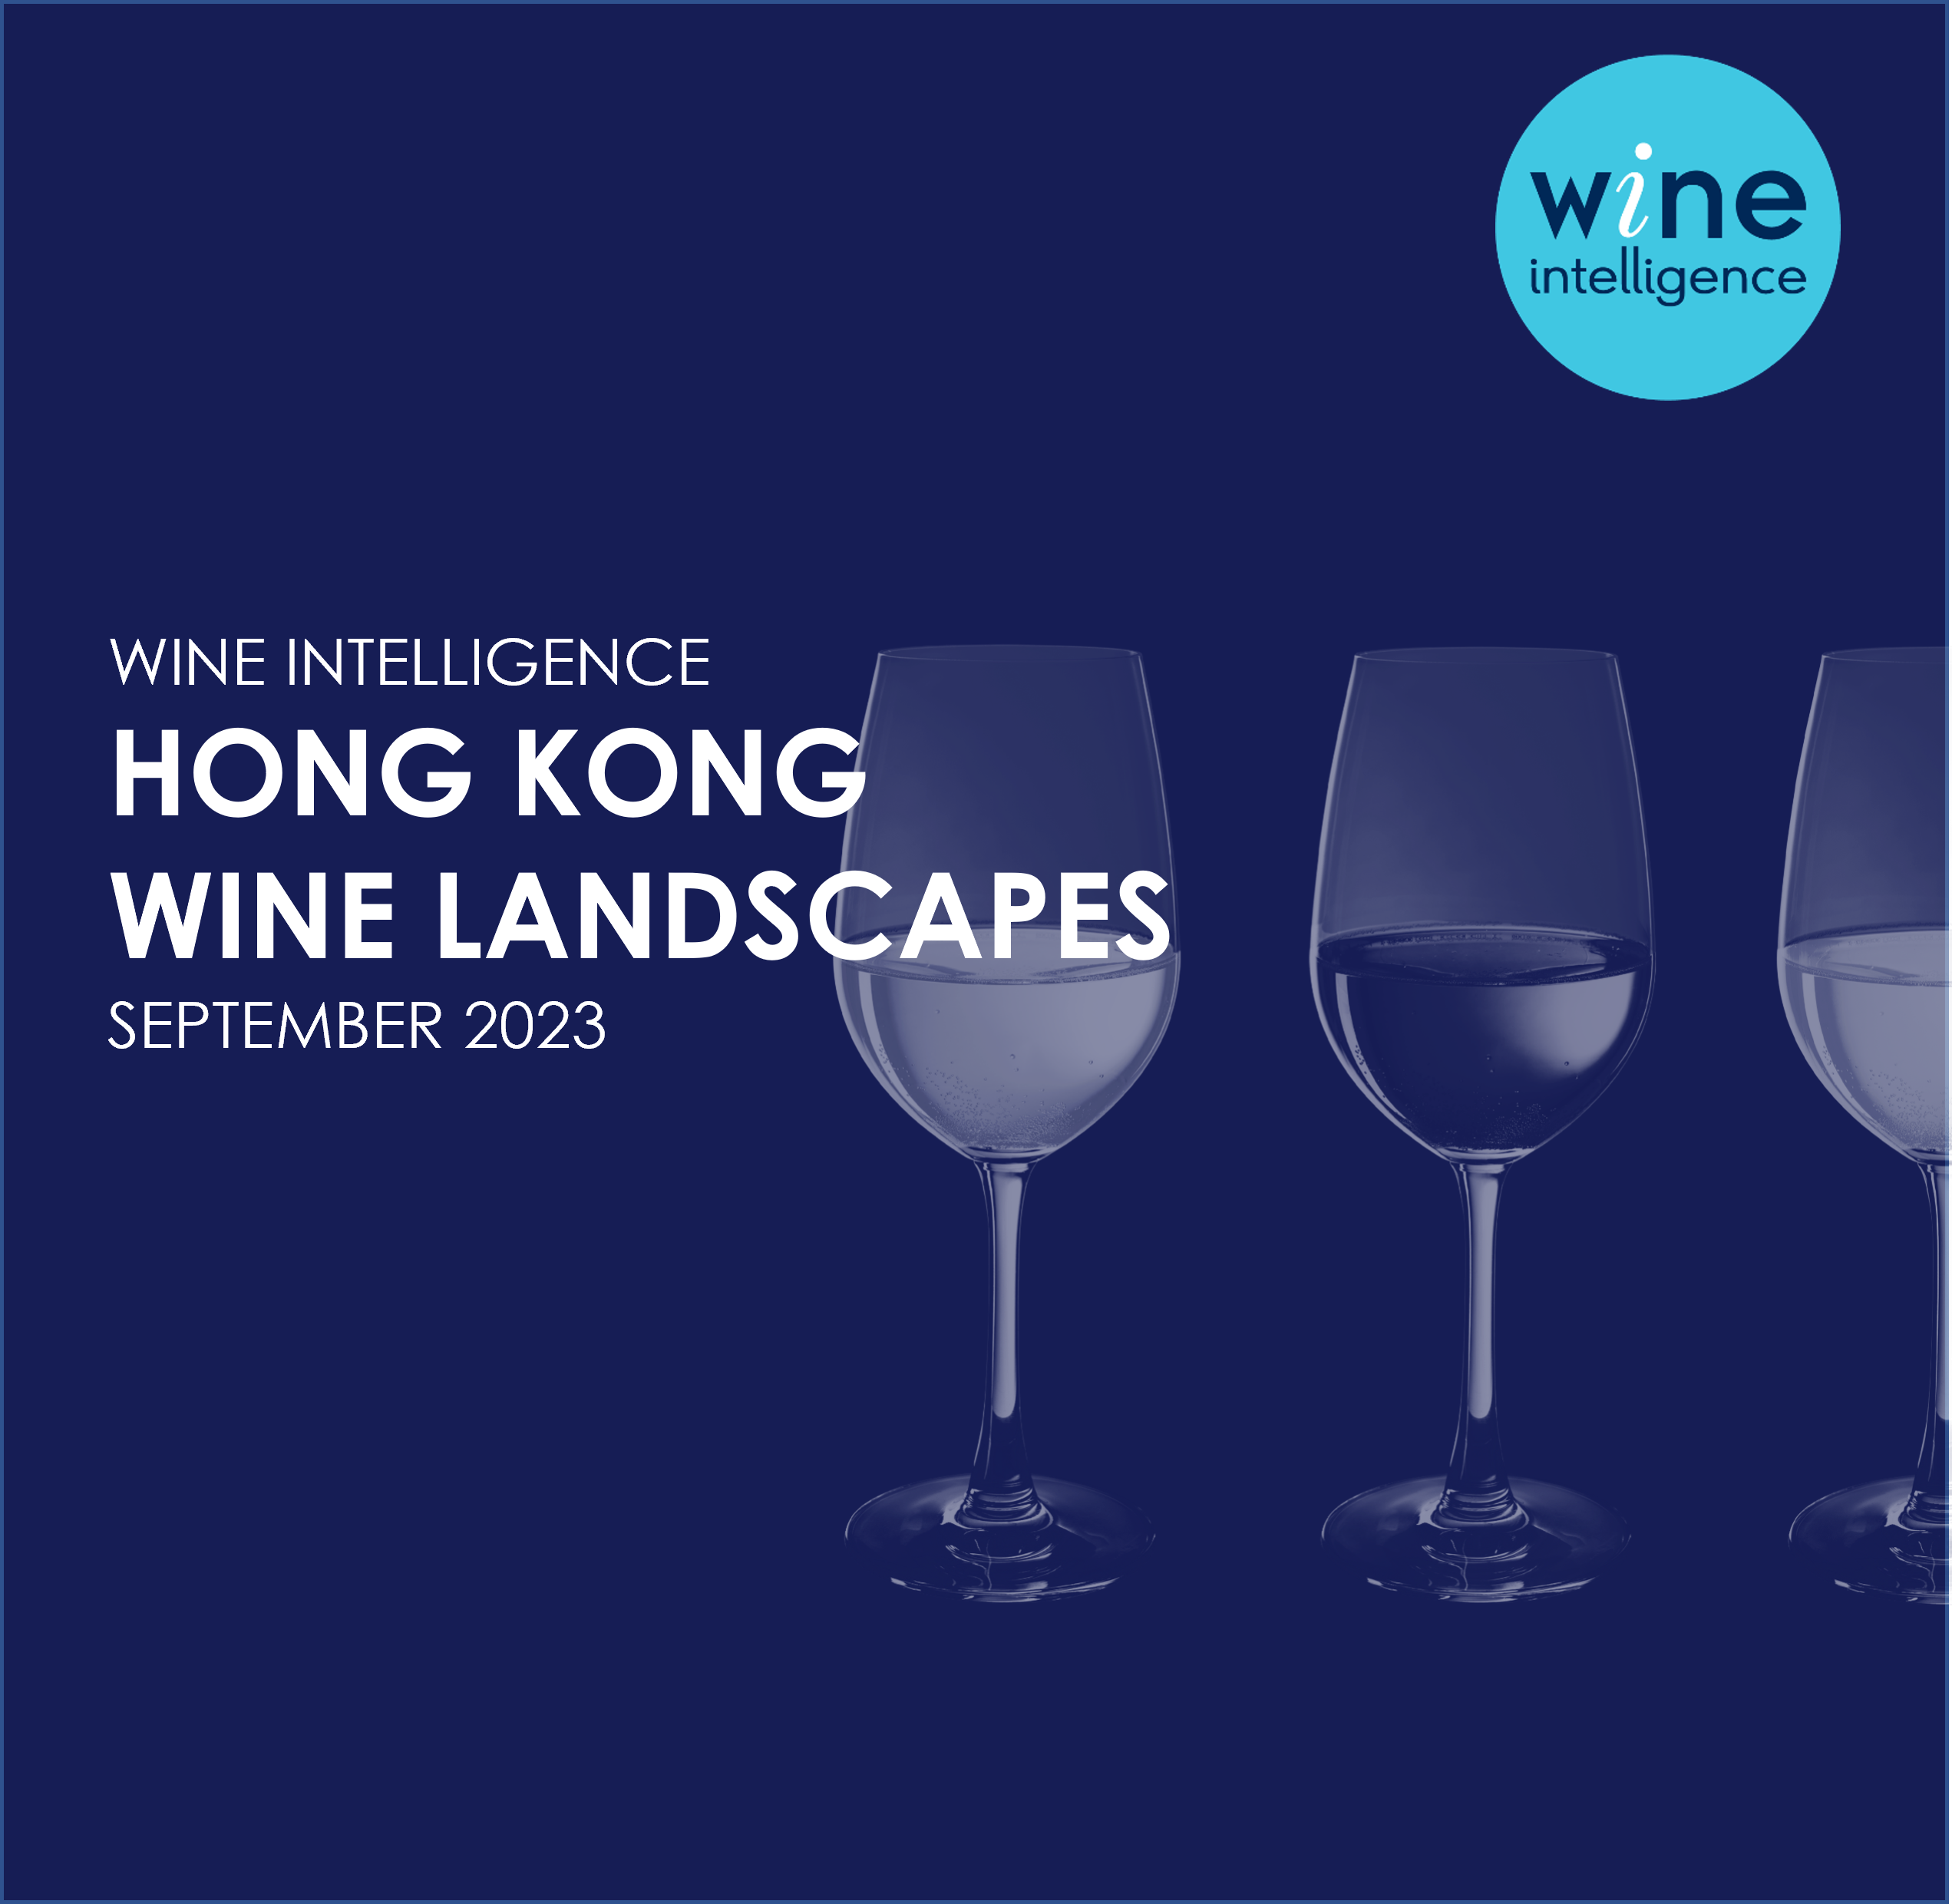 Hong Kong Wine Landscapes 2023 - US Wine Landscapes Report 2023